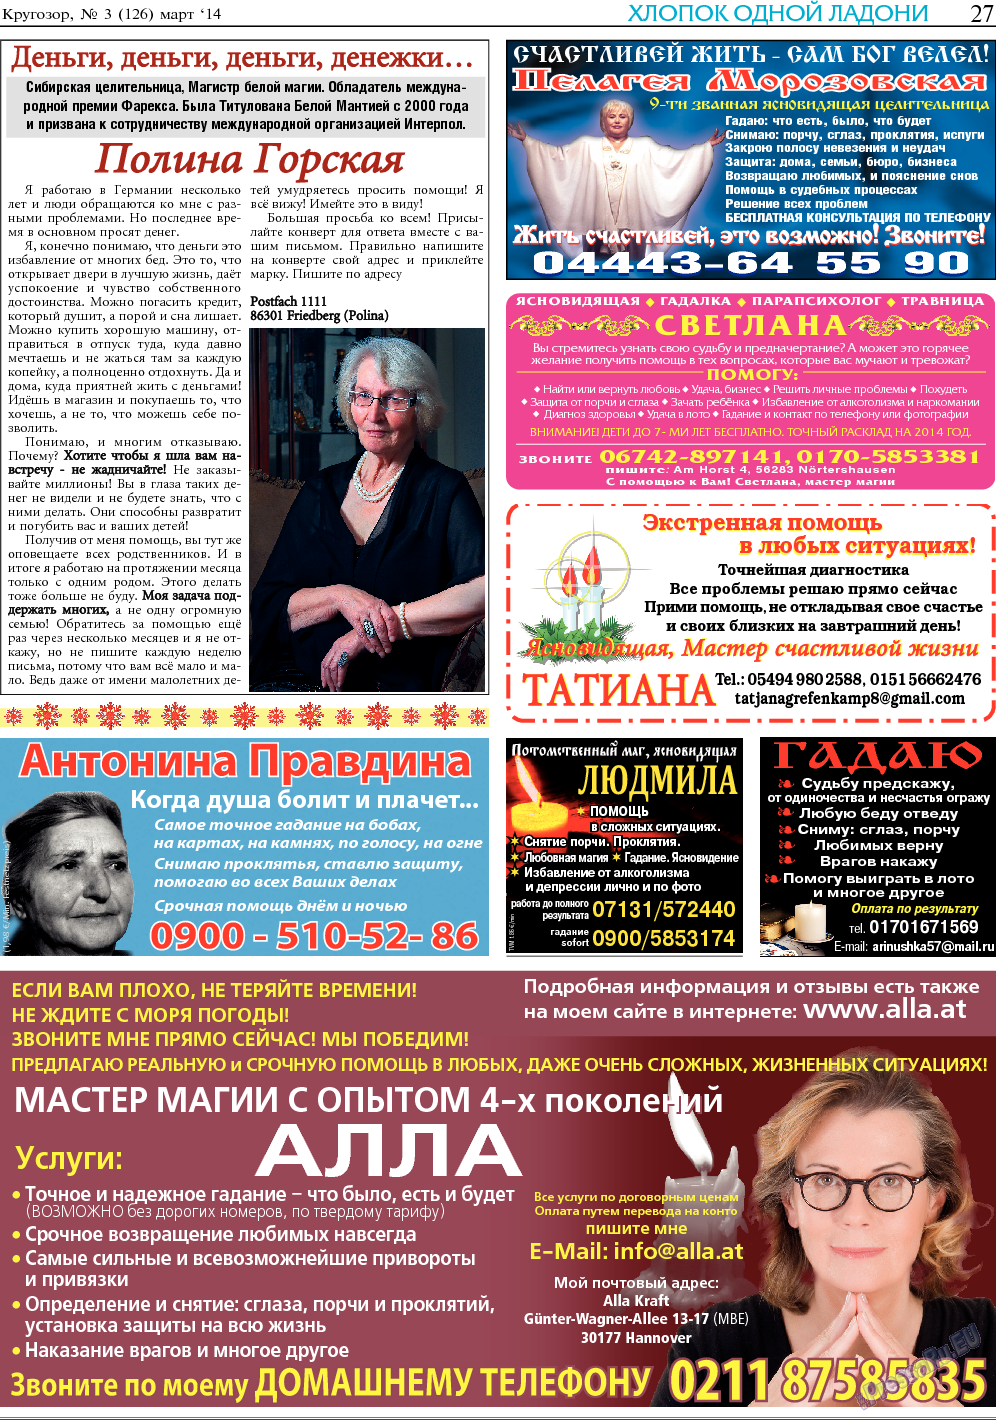 Кругозор, газета. 2014 №3 стр.27